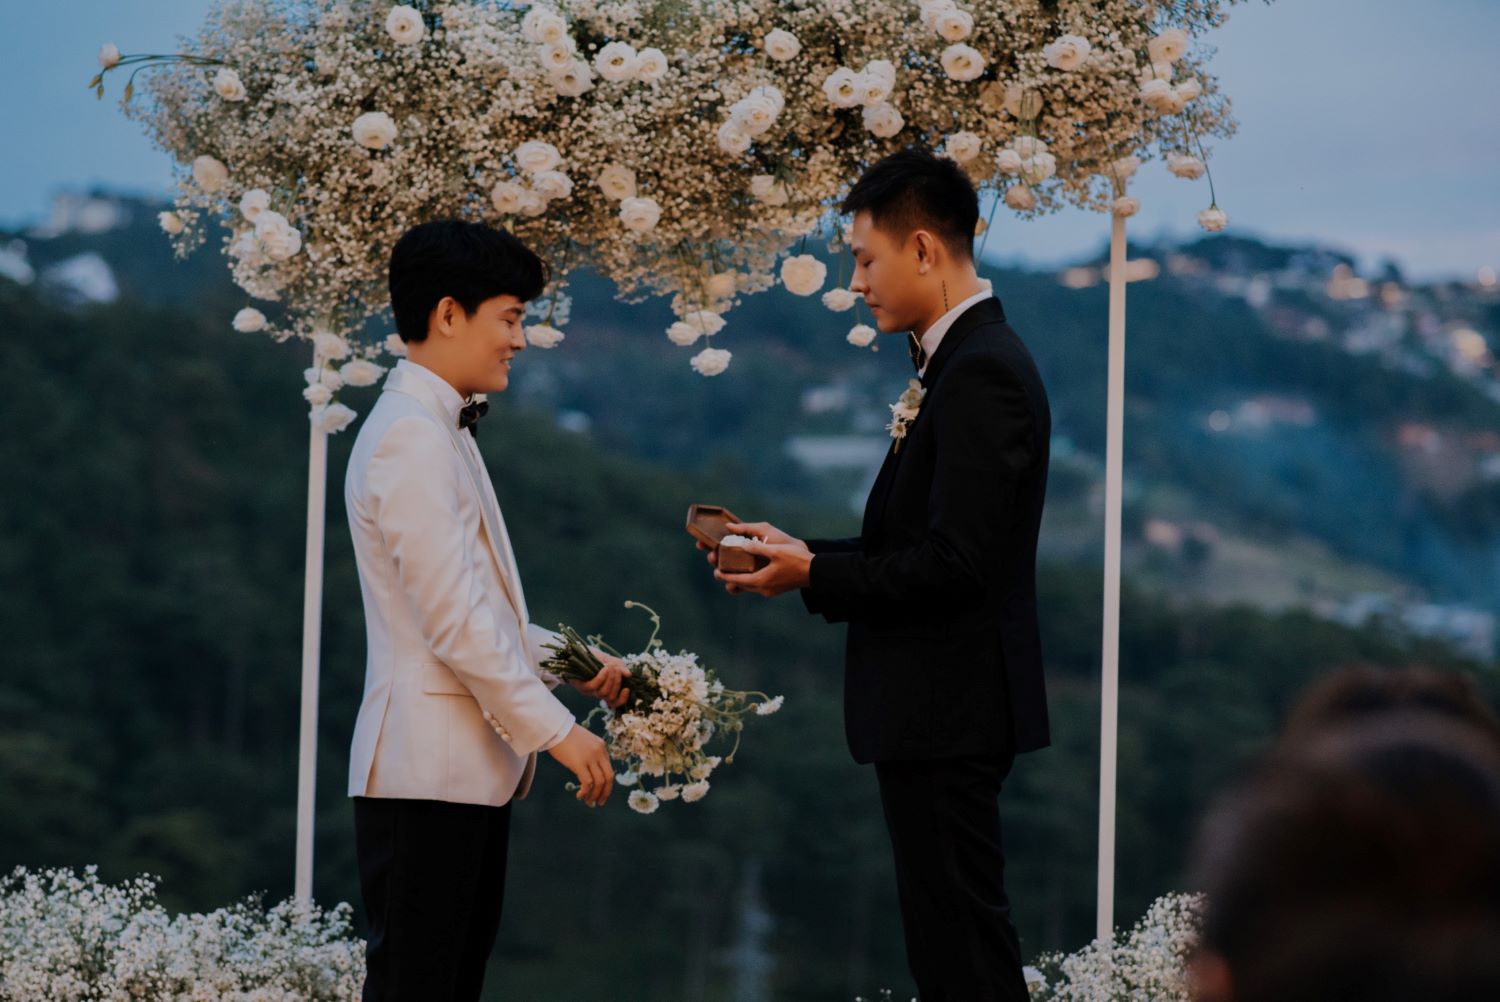 Đám cưới LGBT gây sốt vì lời chúc phúc đến từ 'thiên đường'